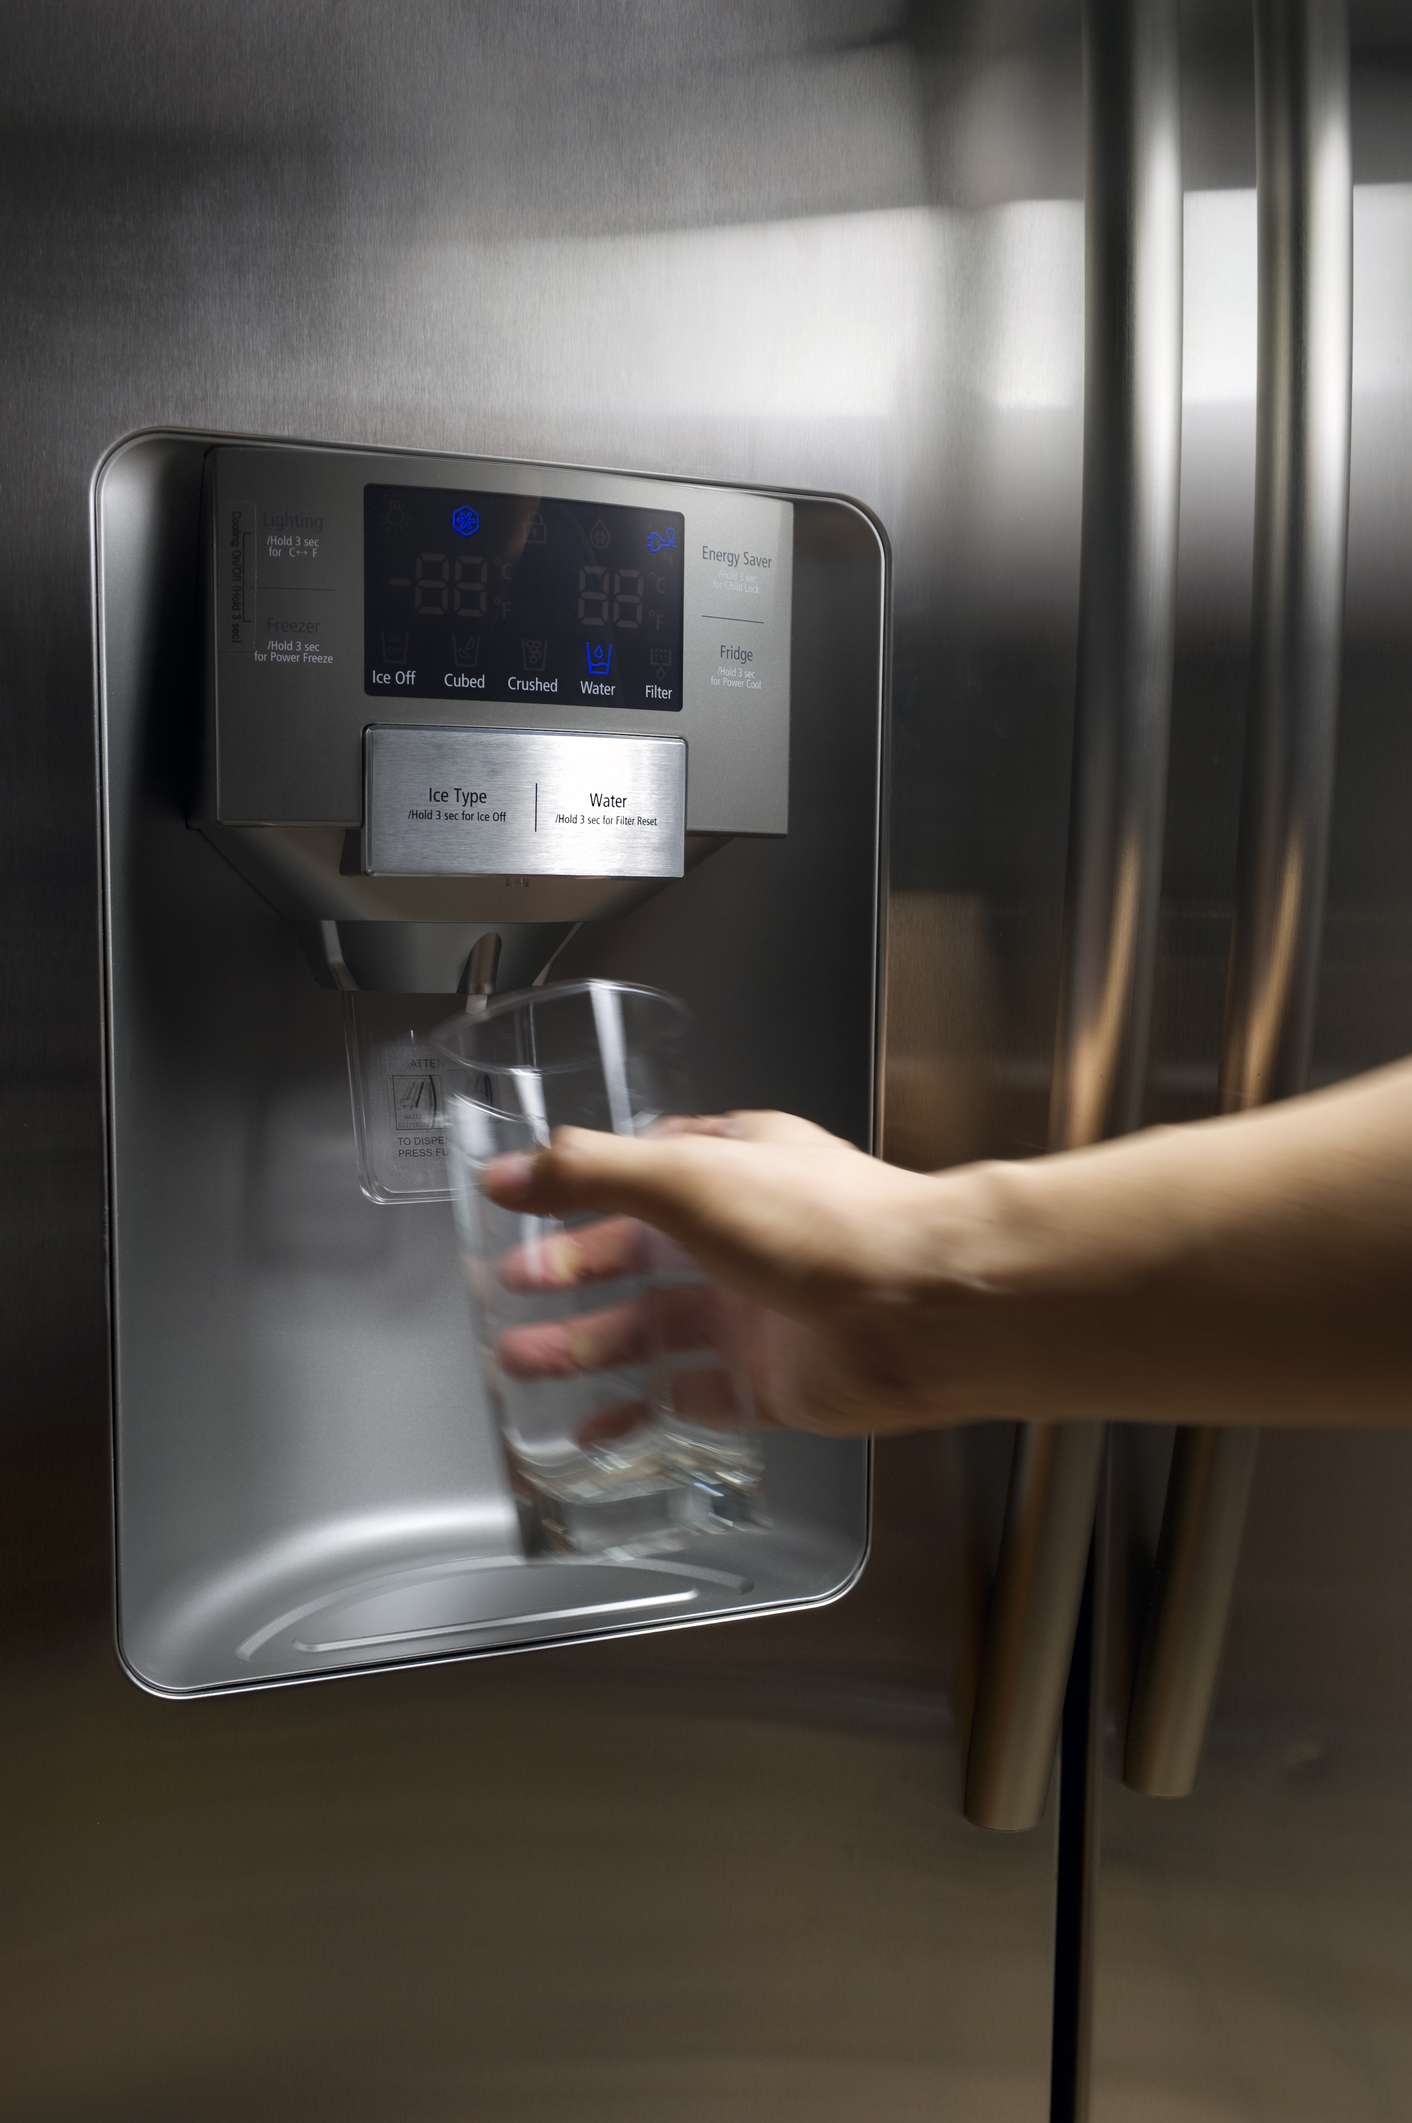 Handausgabe von Wasser aus einem externen Wasserspender an einem Kühlschrank.